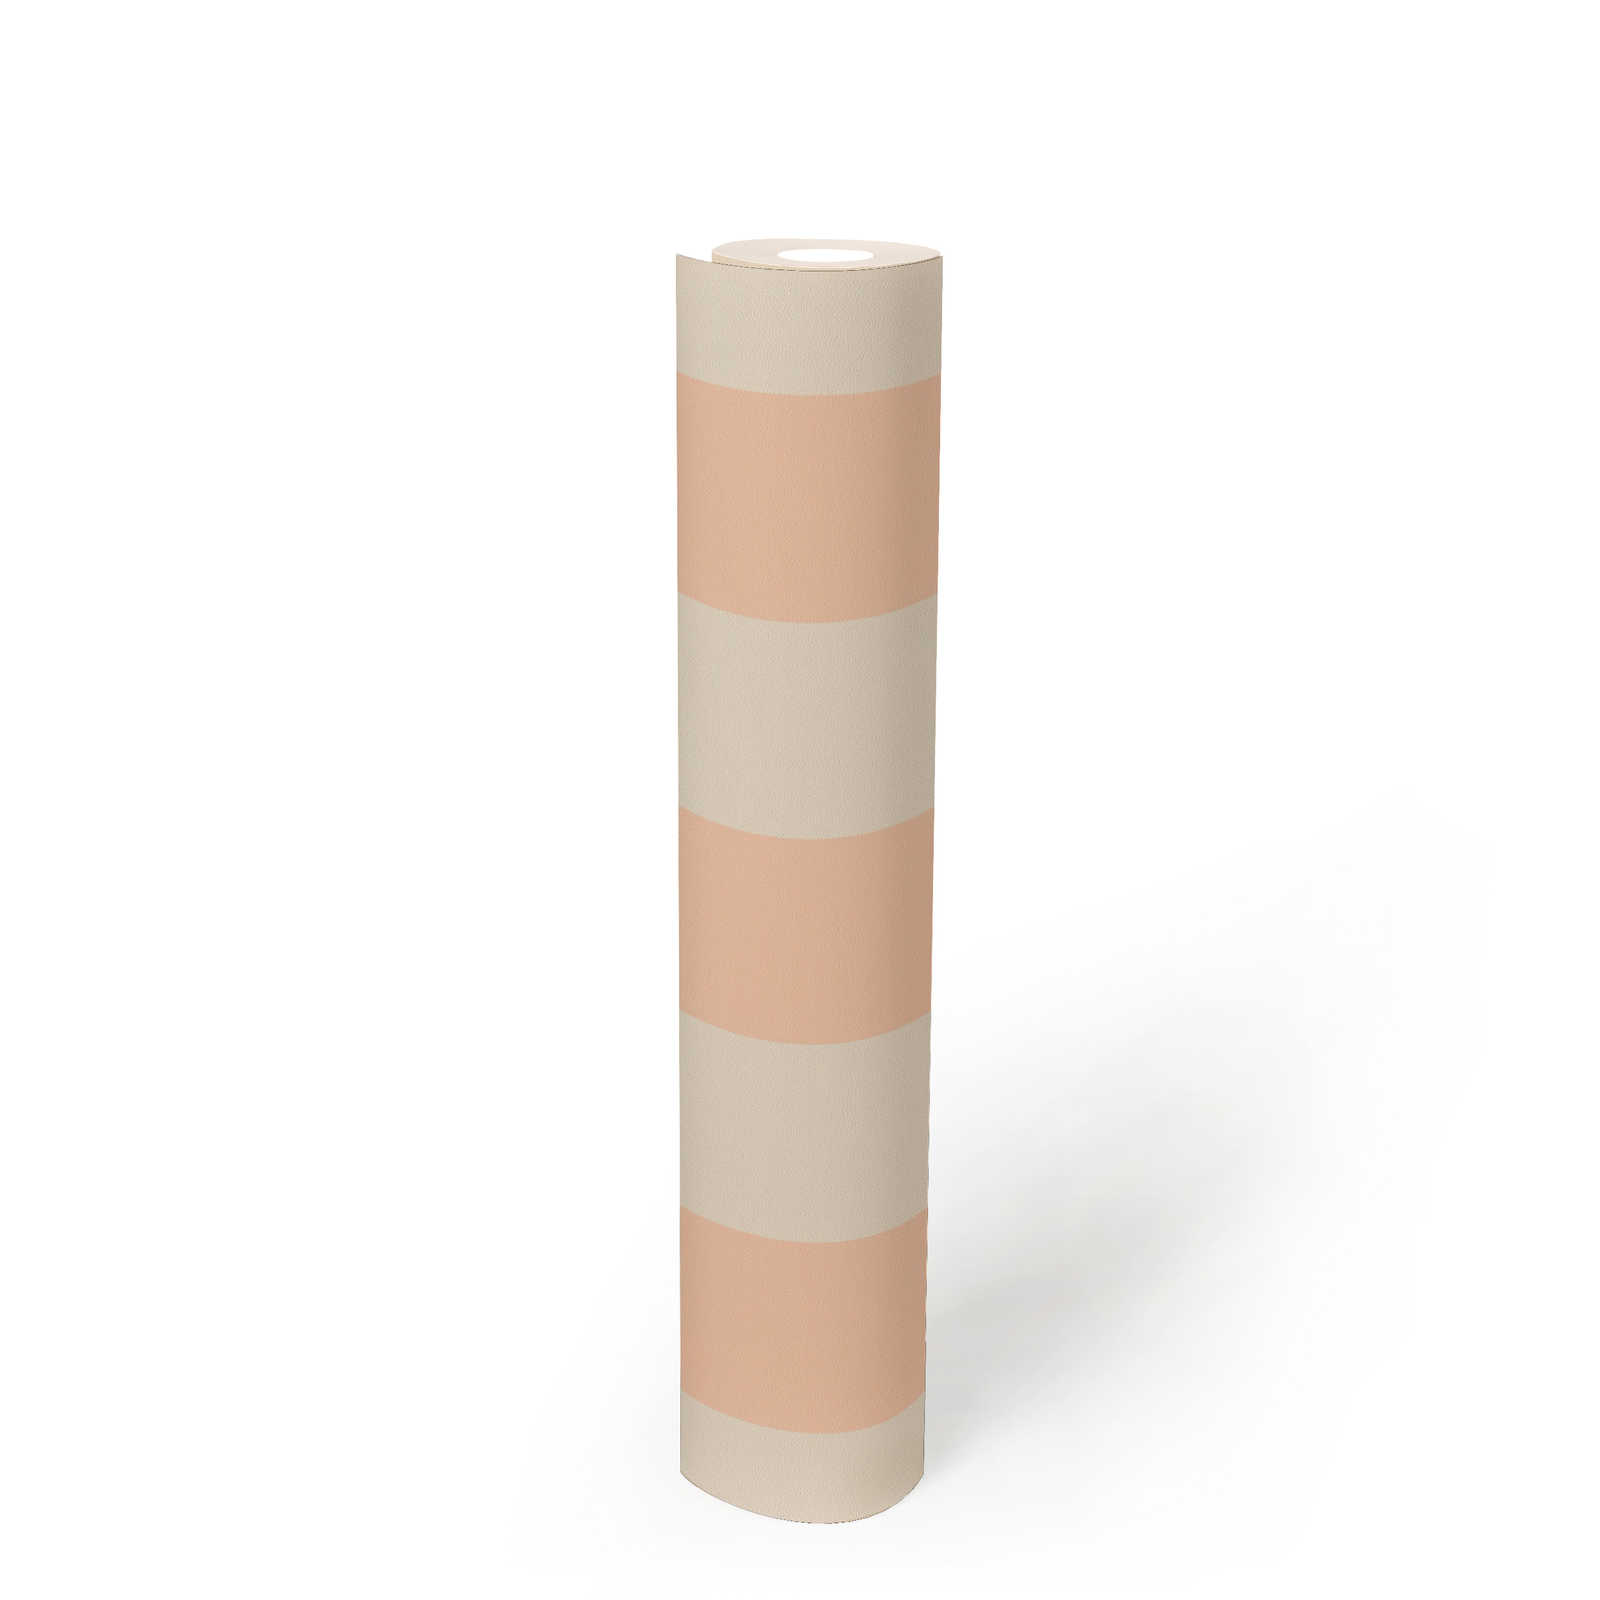             Vliesbehang met grafisch rechthoekpatroon - crème, roze
        